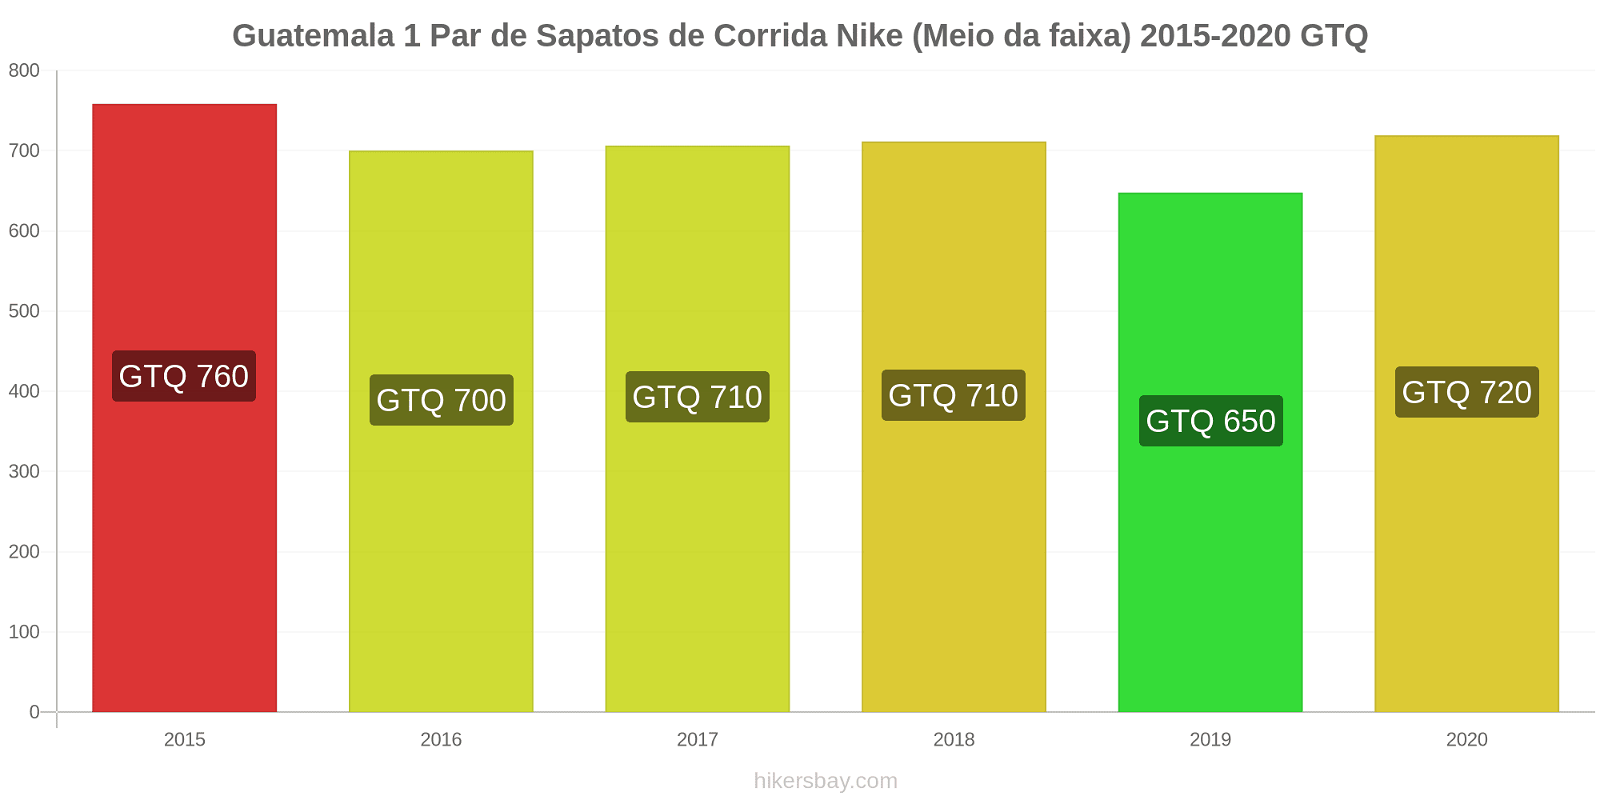 Guatemala variação de preço 1 par de tênis Nike (mid-range) hikersbay.com